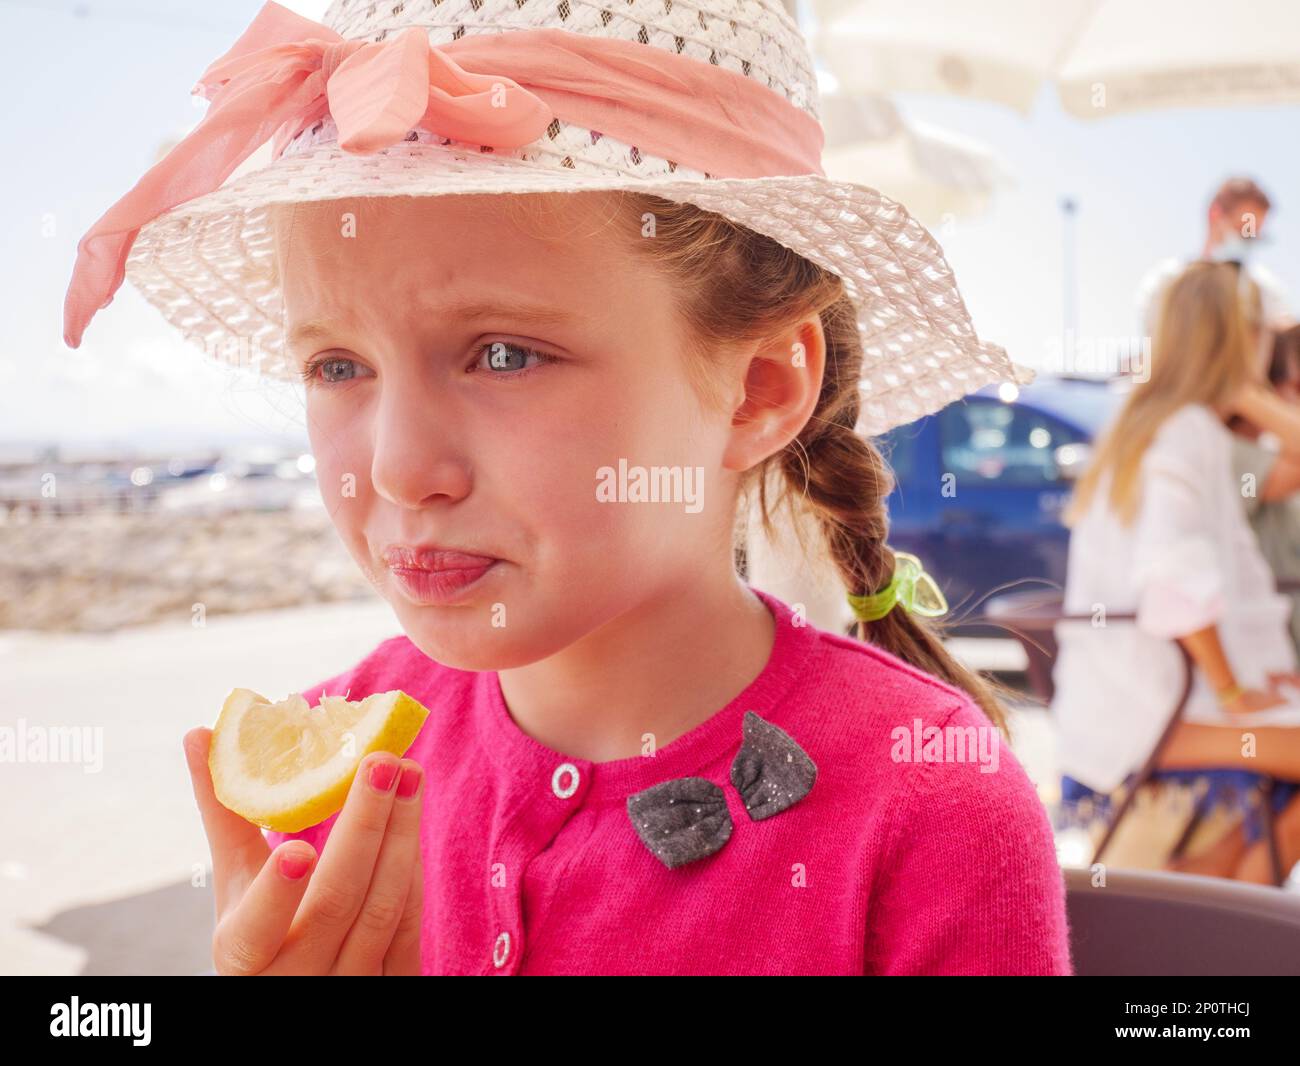 La giovane ragazza tira un volto dal gusto acido di mangiare una fetta di limone Foto Stock